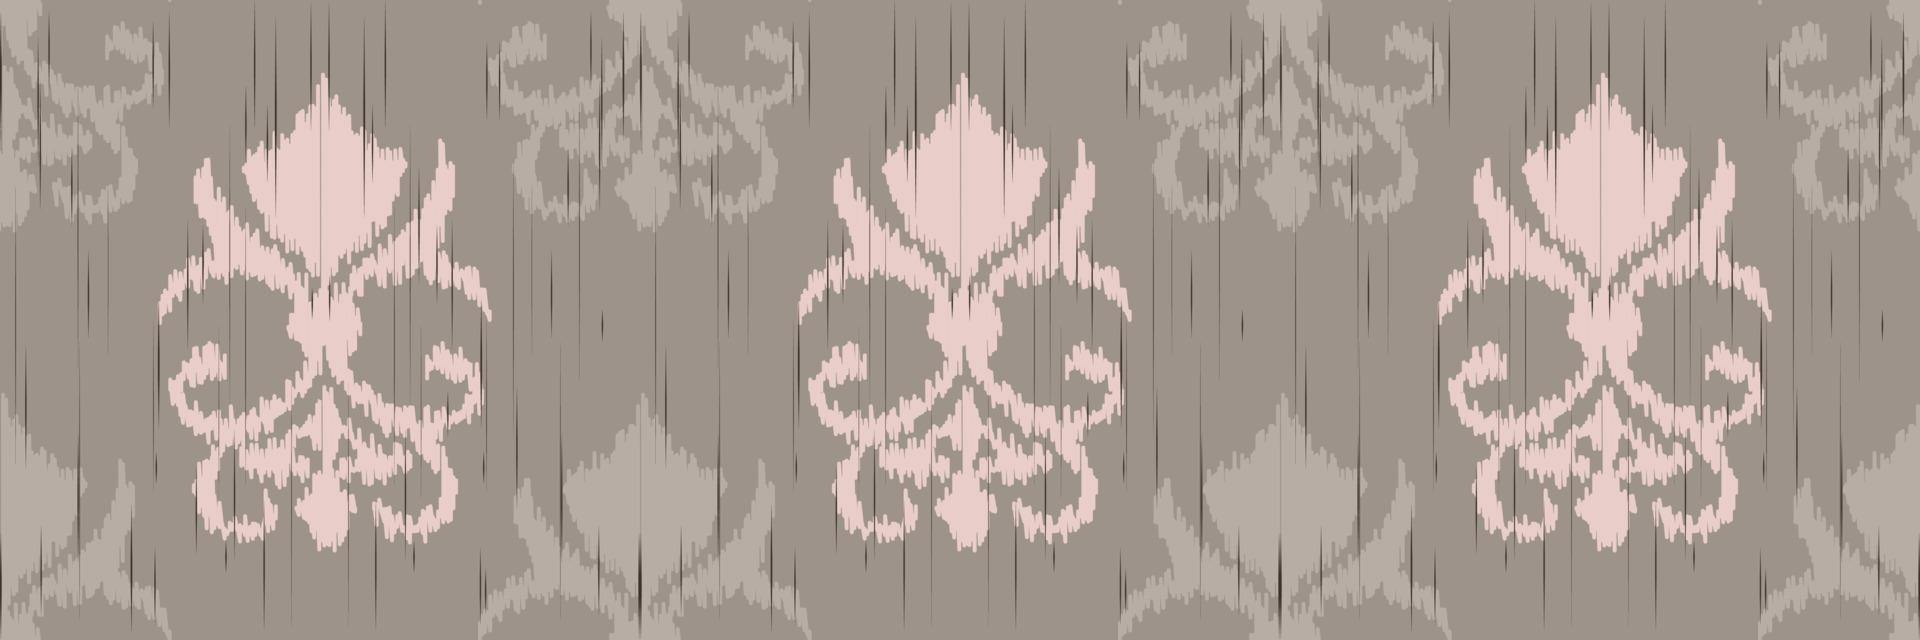 Ikat Damask Scandinavian embroidery, ikat seamless tribal Aztec, Motif Vector Digital textile Asian Design ancient art for Prints Fabric saree Mughal Swaths texture Kurti Kurtis Kurtas